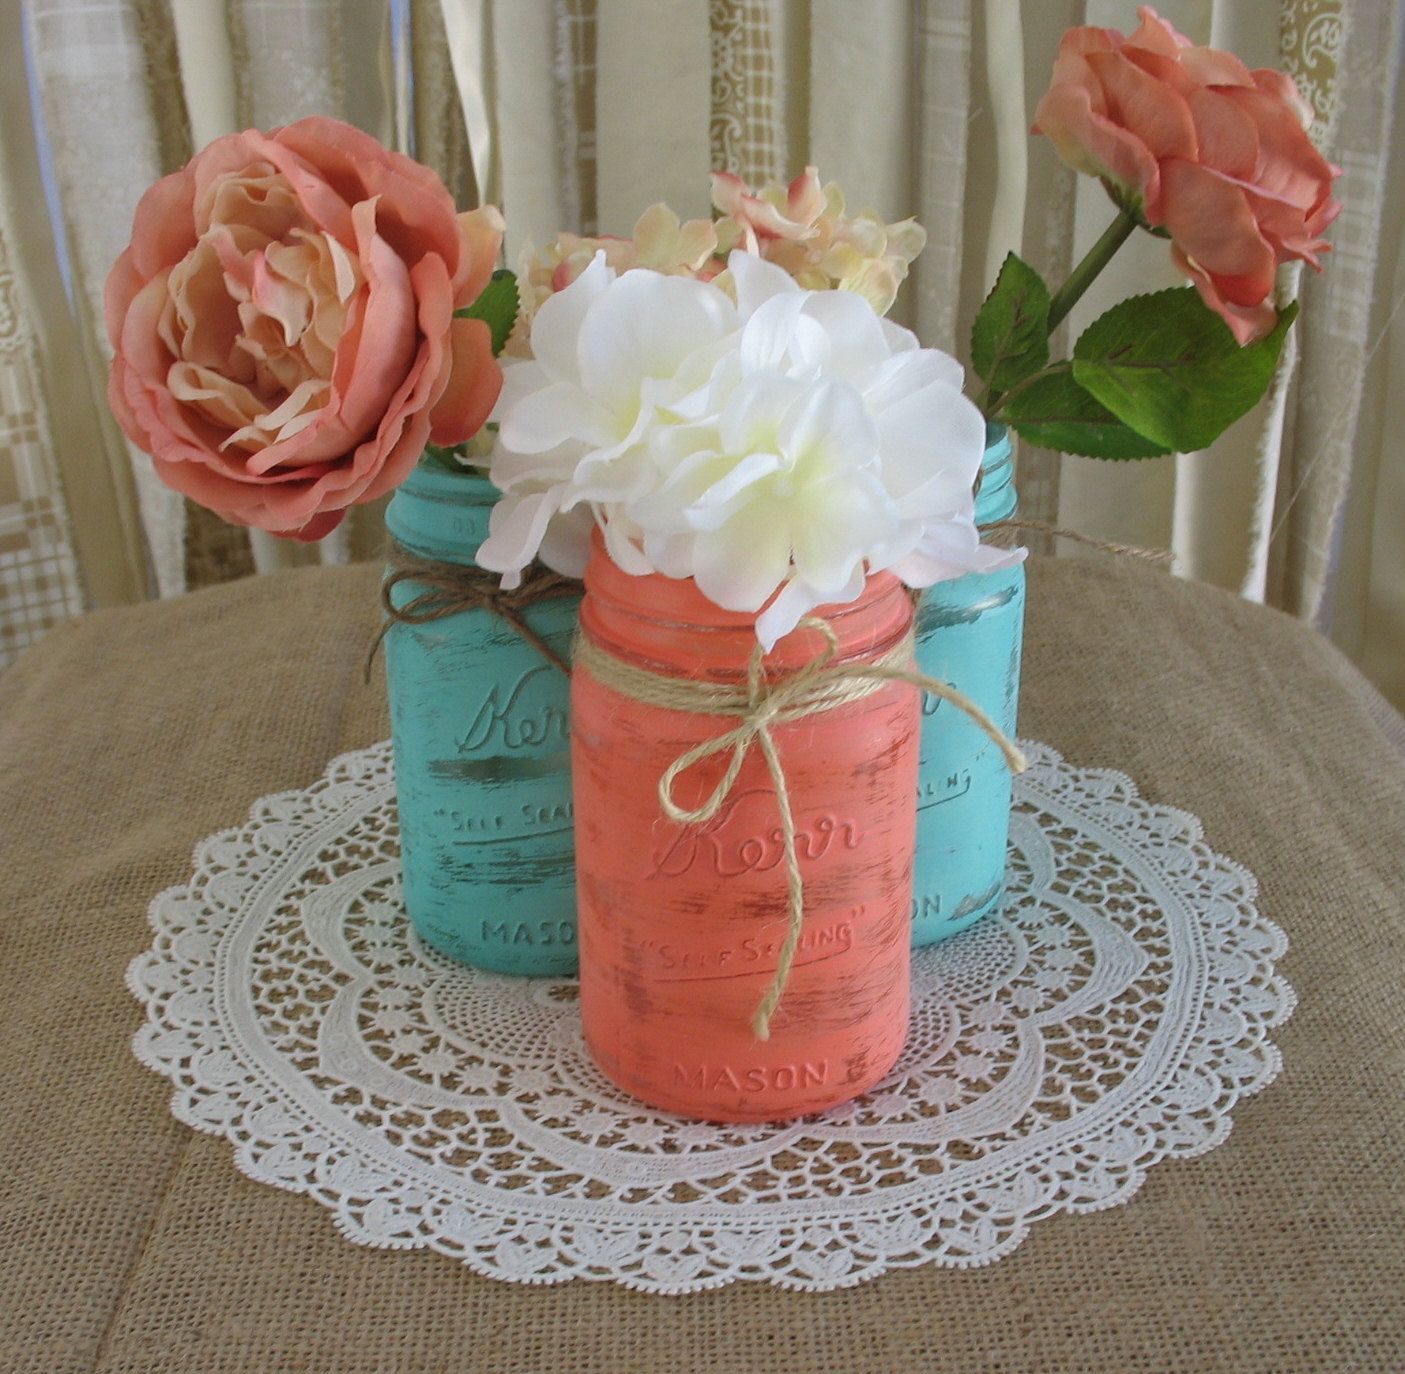 Mason Jars, Ball jars, Painted Mason Jars, Flower Vases, Rustic Wedding Centerpieces, turquoise and coral mason jars. $24.00, via